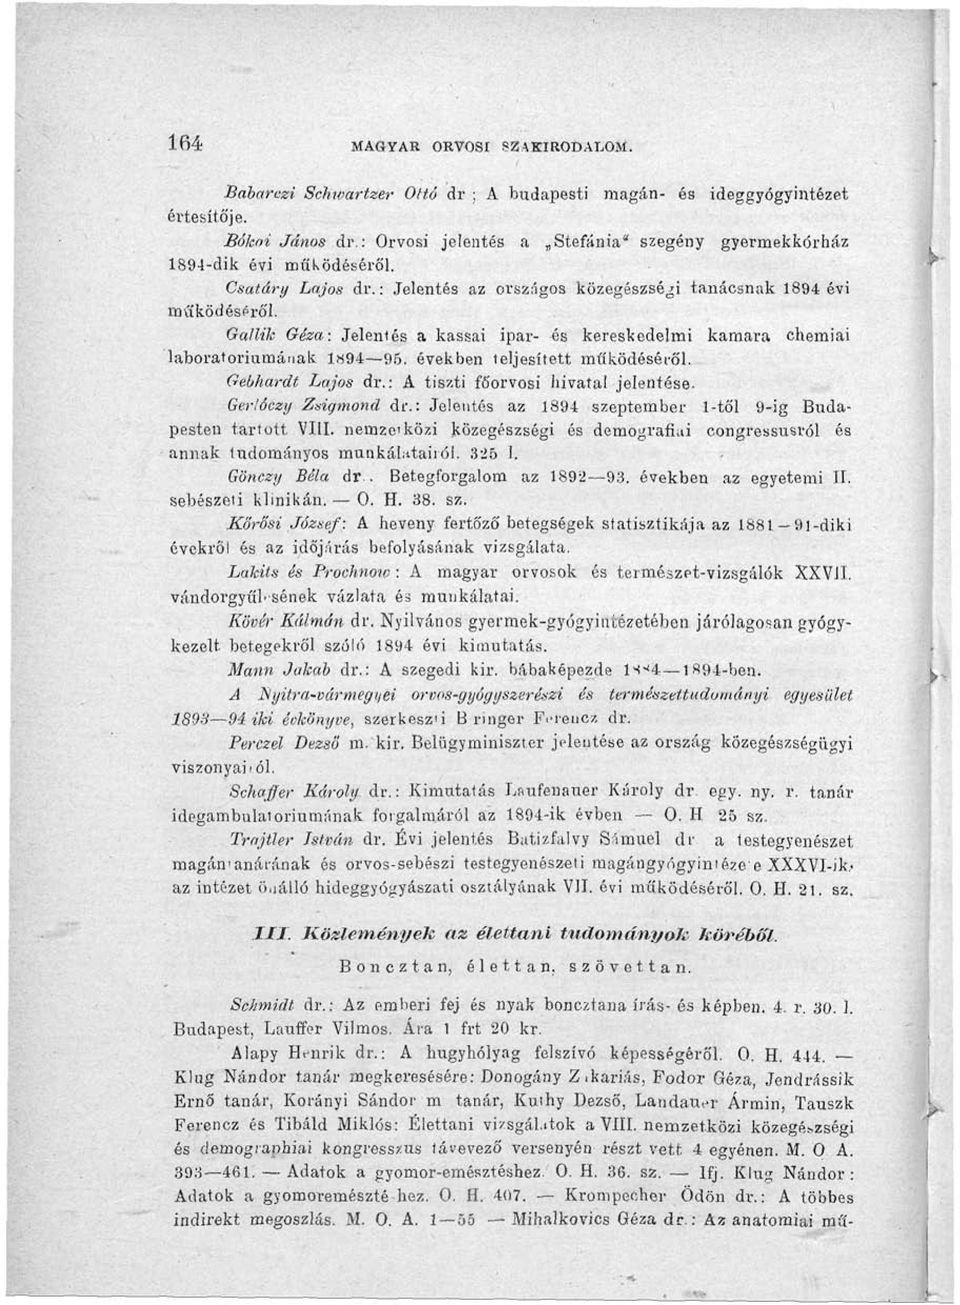 Gallik Géza: Jelentés a kassai ipar- és kereskedelmi kamara chemiai laboratóriumának 1894 95. években teljesített működéséről. Gebhardt Lajos dr.: A tiszti főorvosi hivatal jelentése. Ger'.